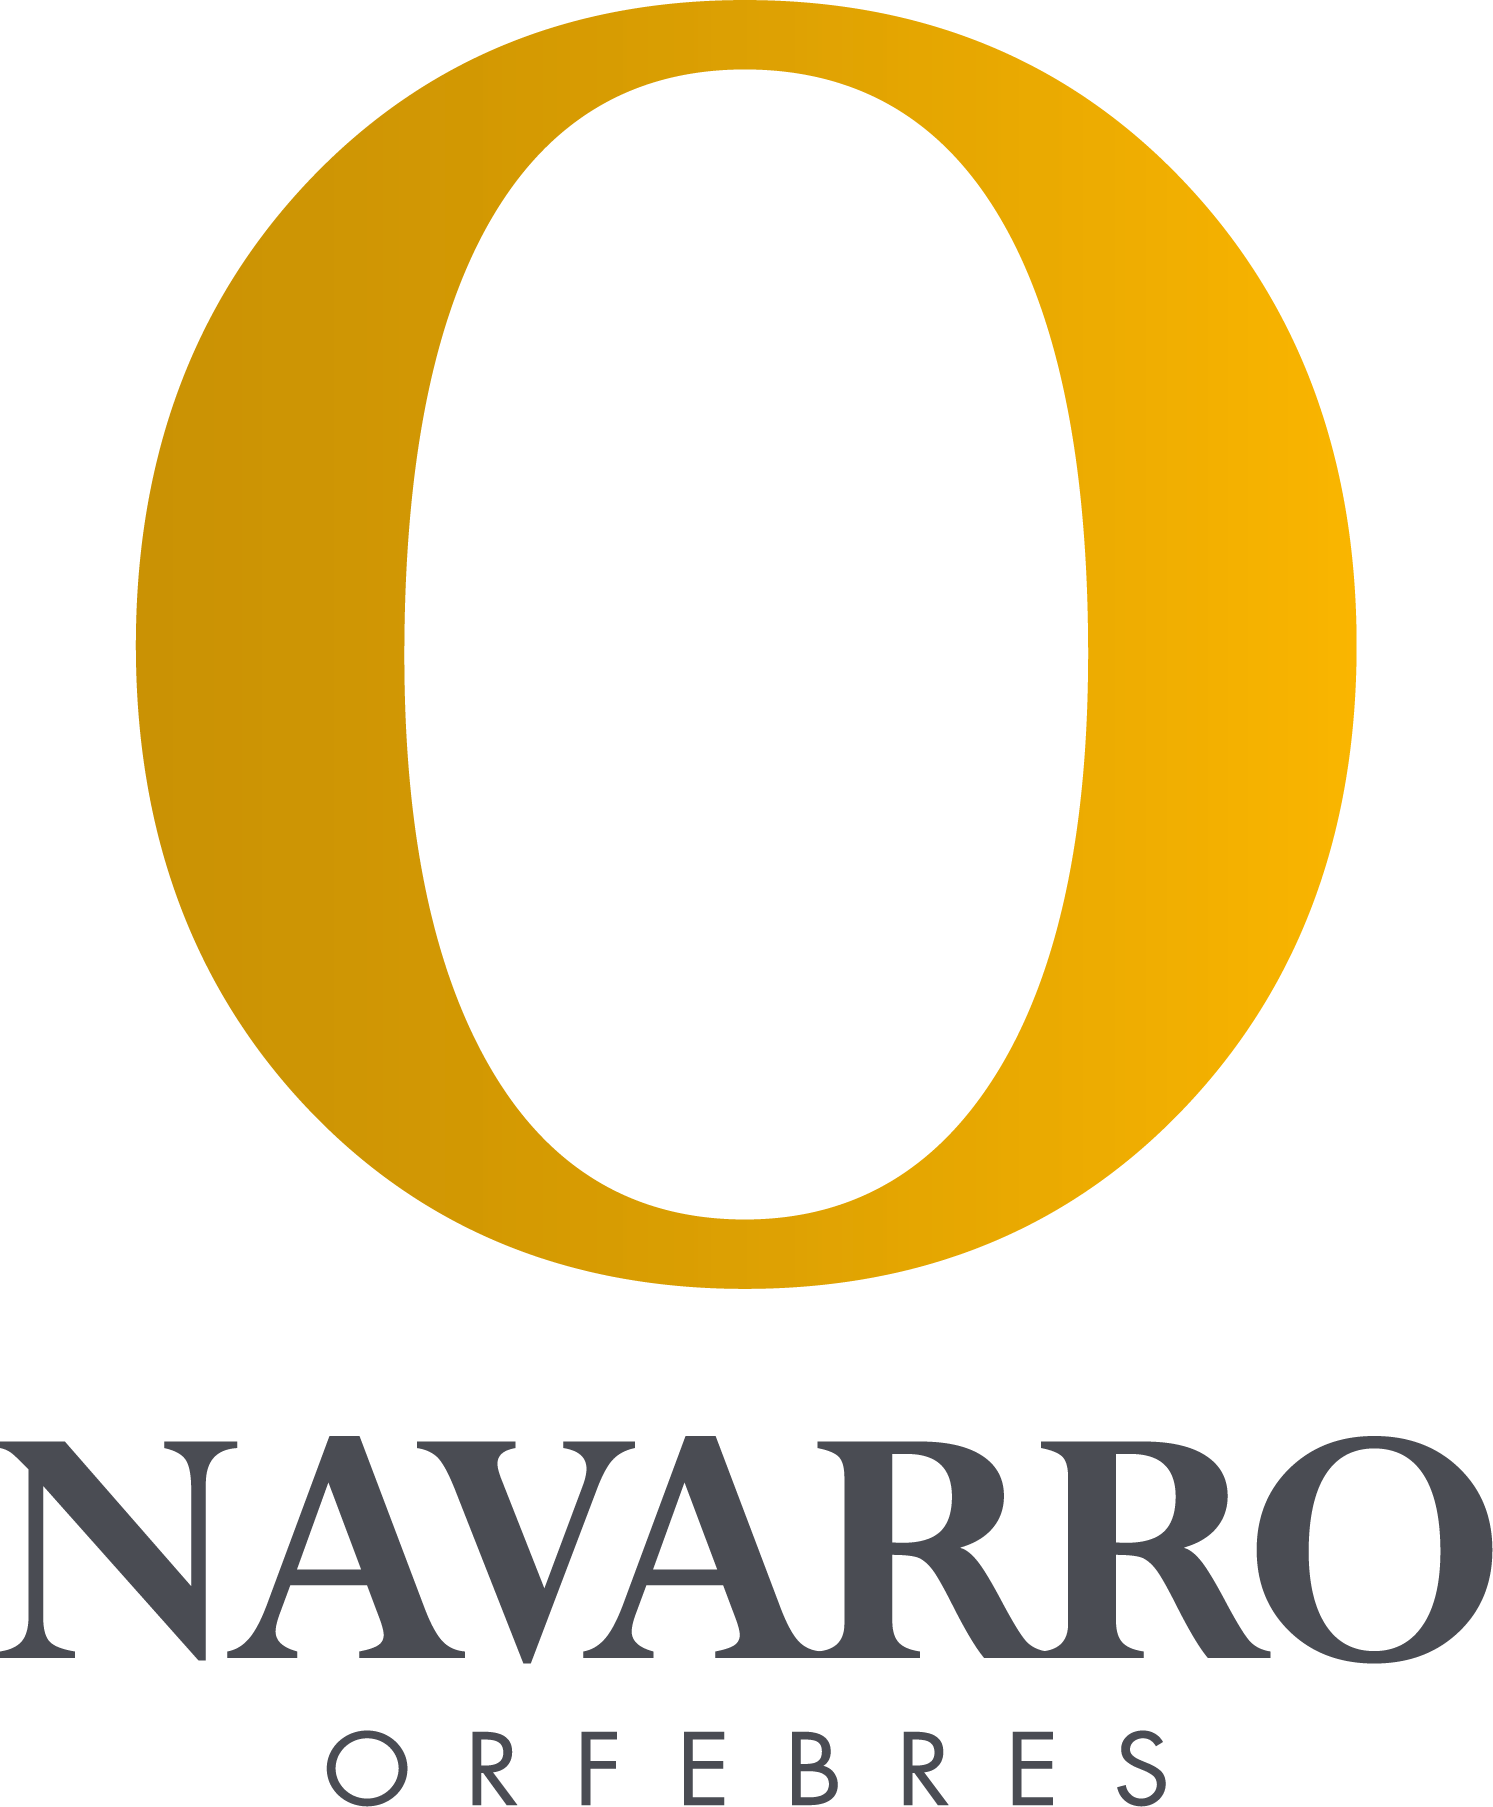 Orfebres Navarro